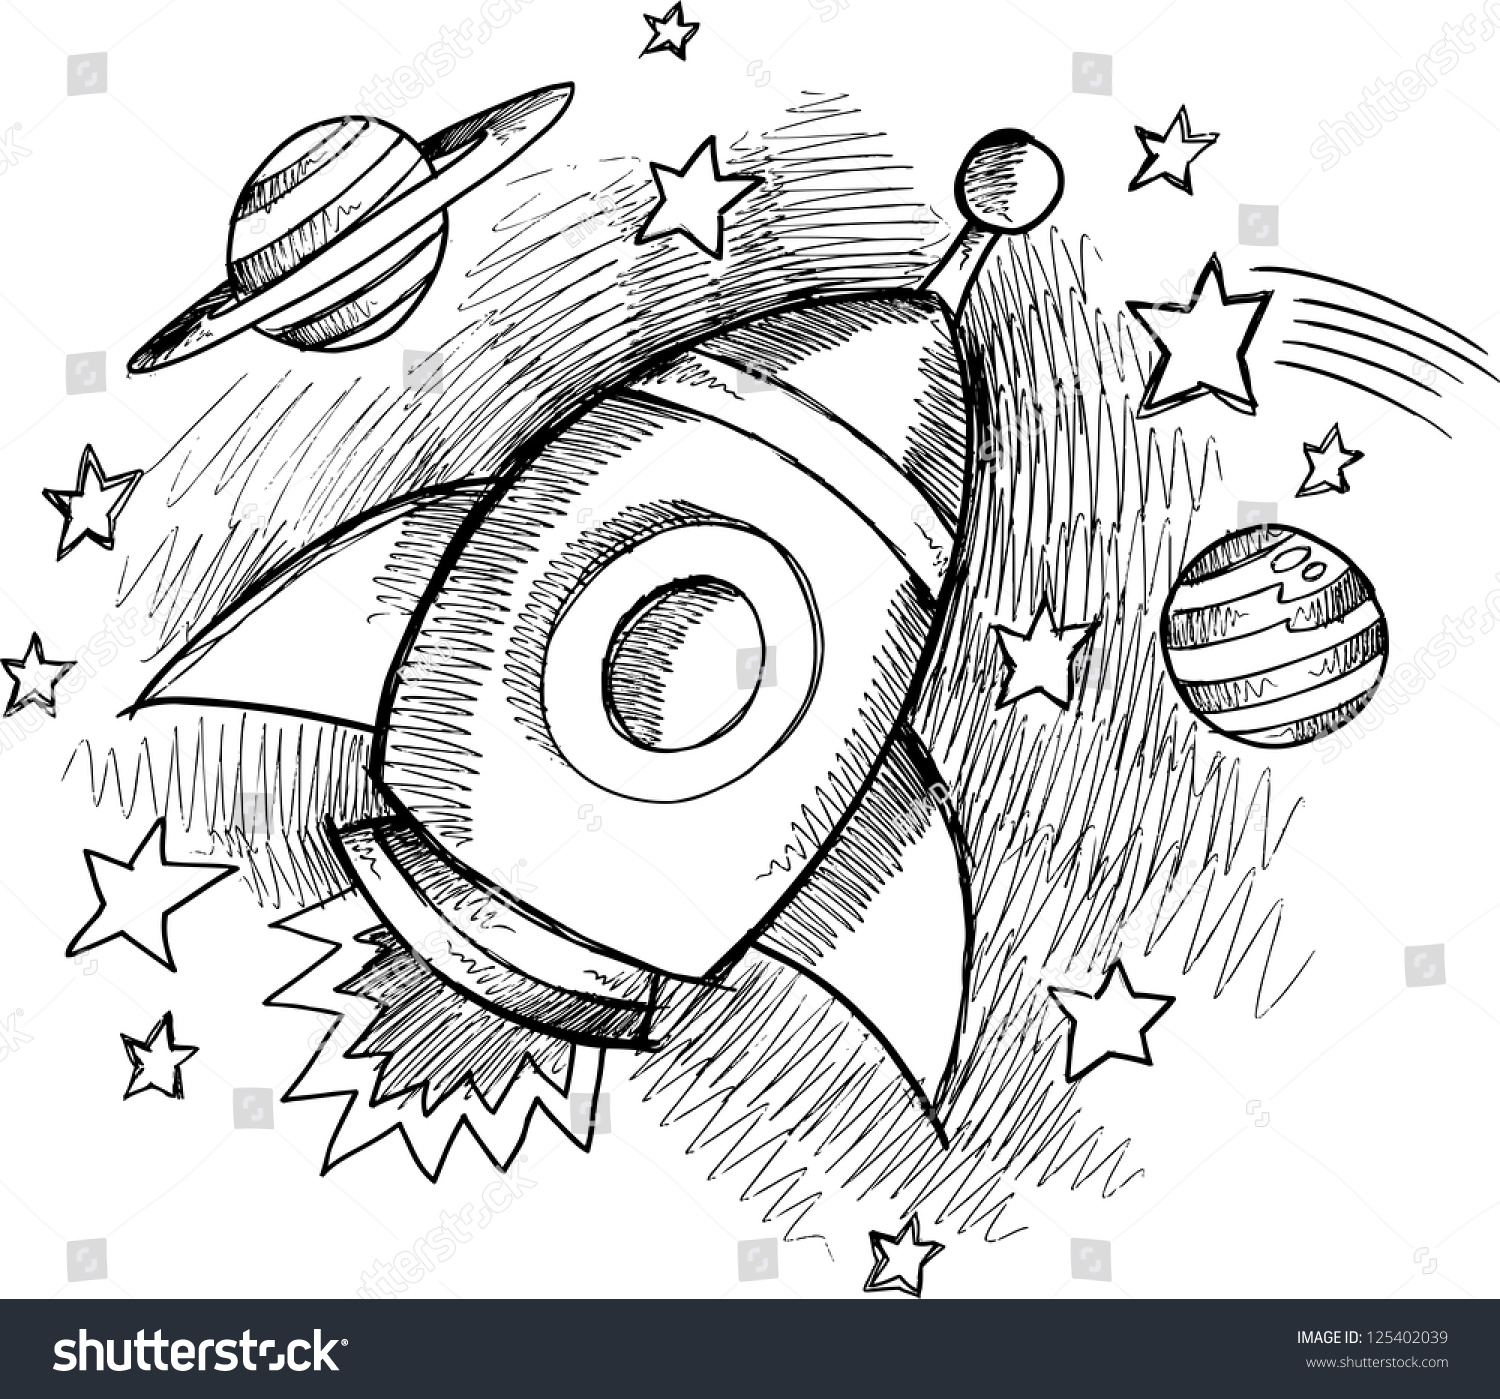 Эскиз рисунка на тему космос